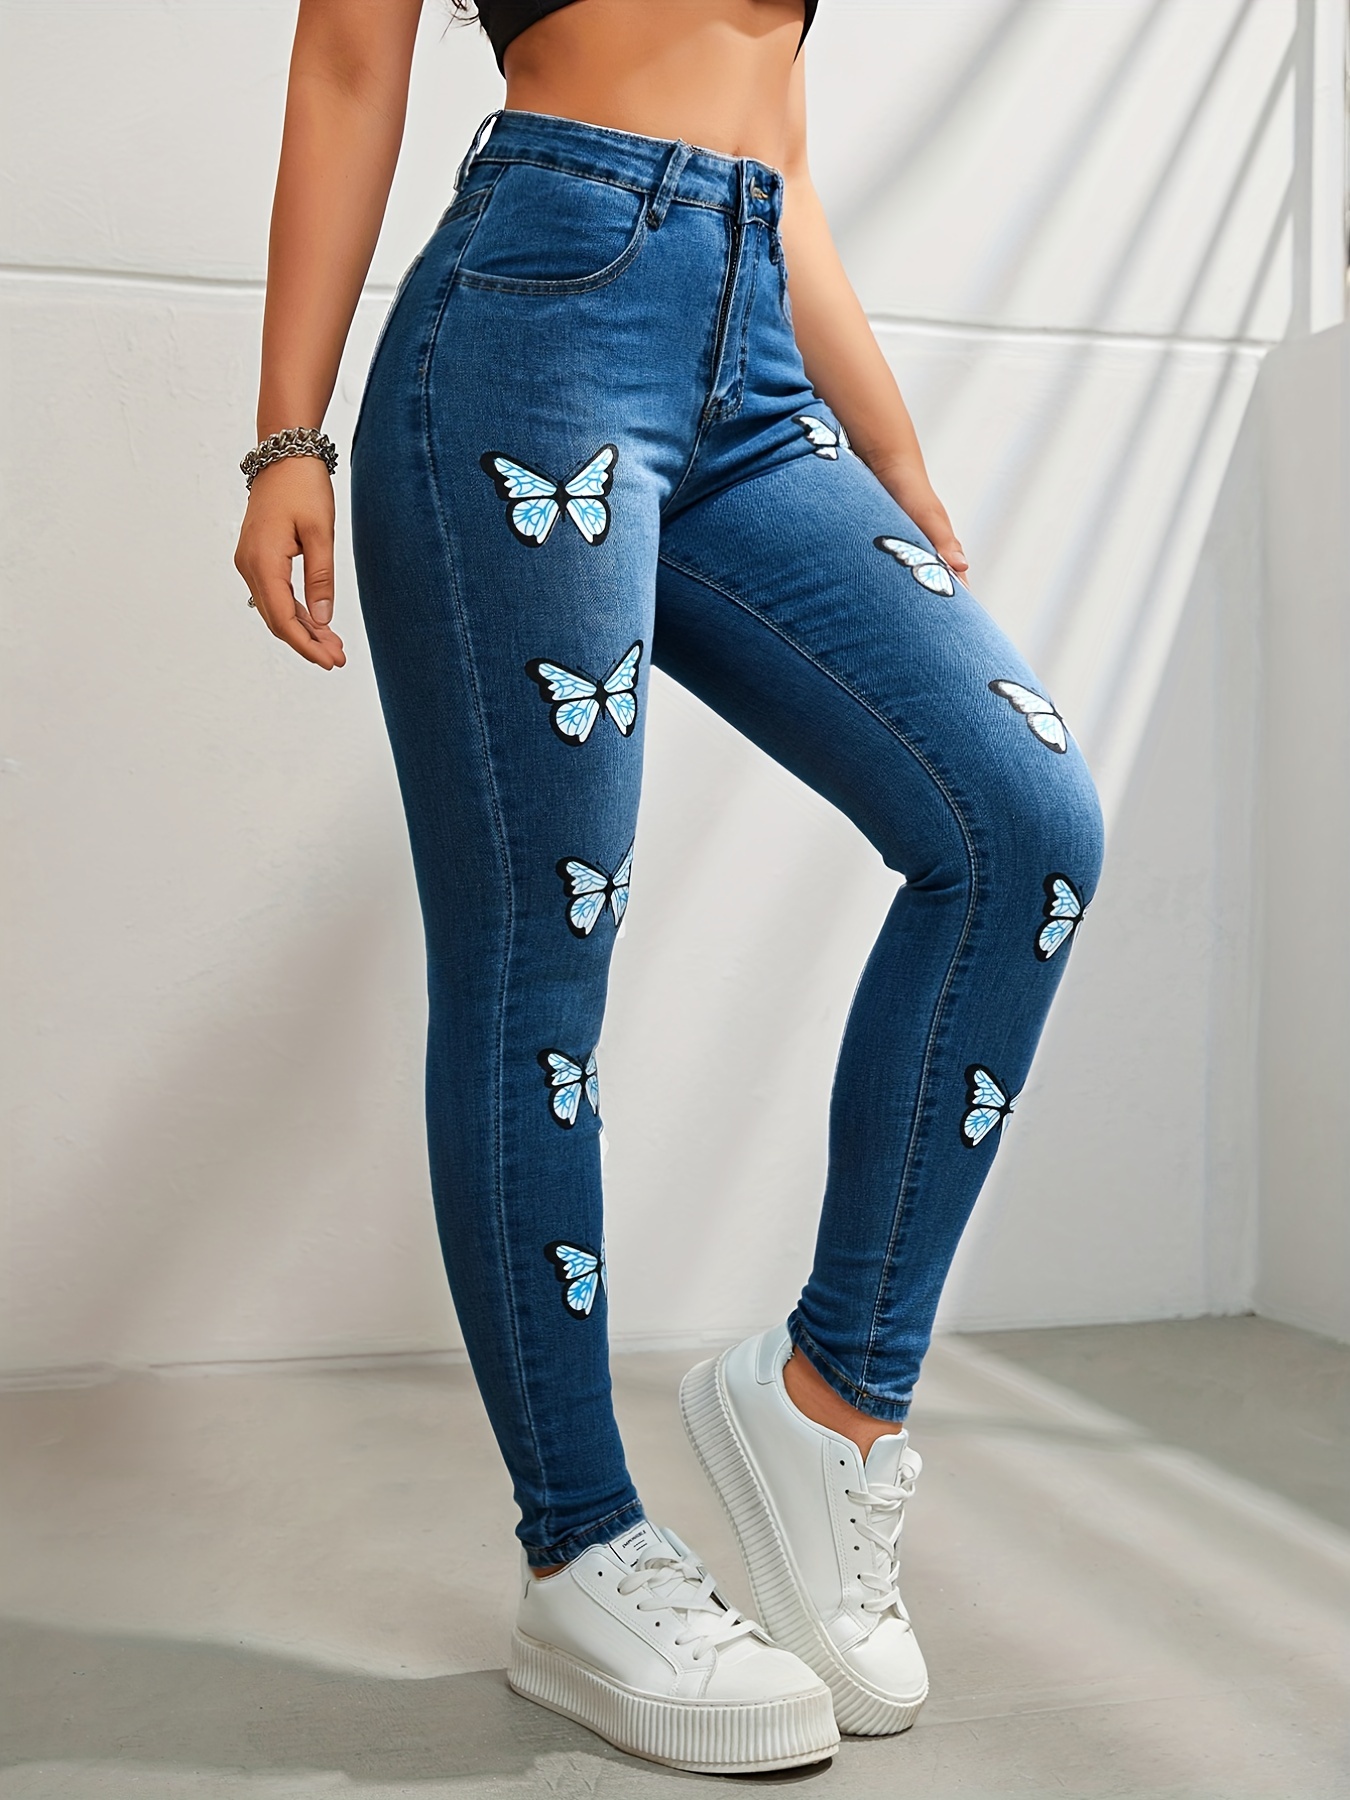 Jeans estampados mujer